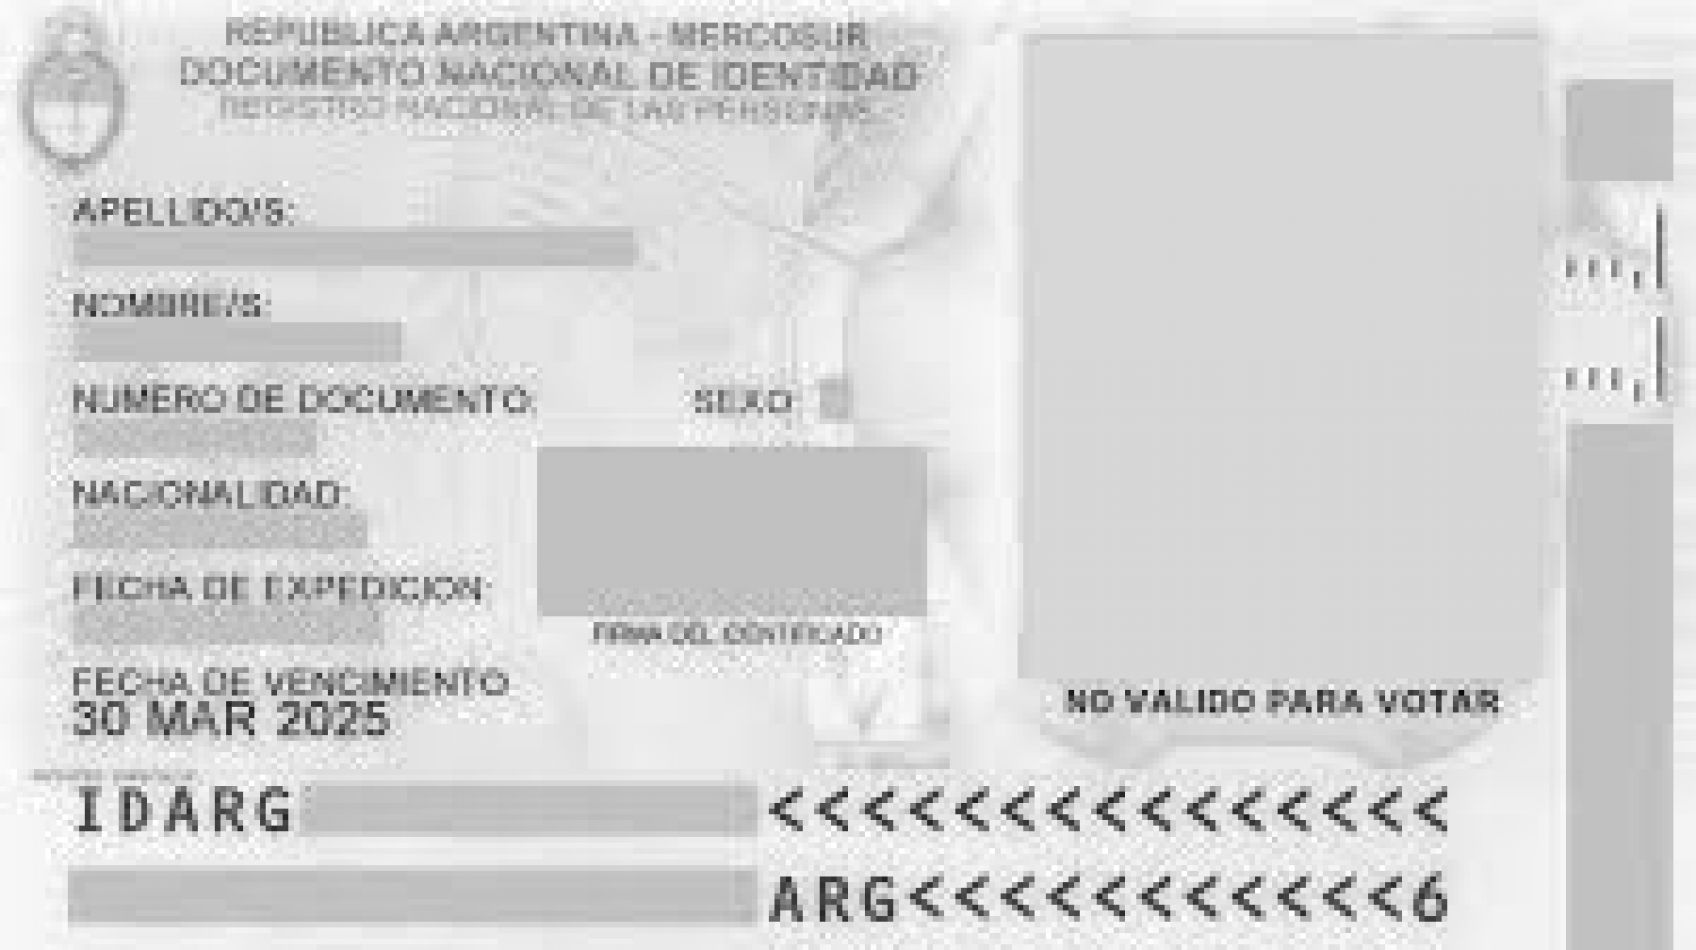 Dni Vacio Para Rellenar Proponen incorporar nueva opción en la categoría sexo en los DNI - Nacional  - FeedBack Salta, Argentina